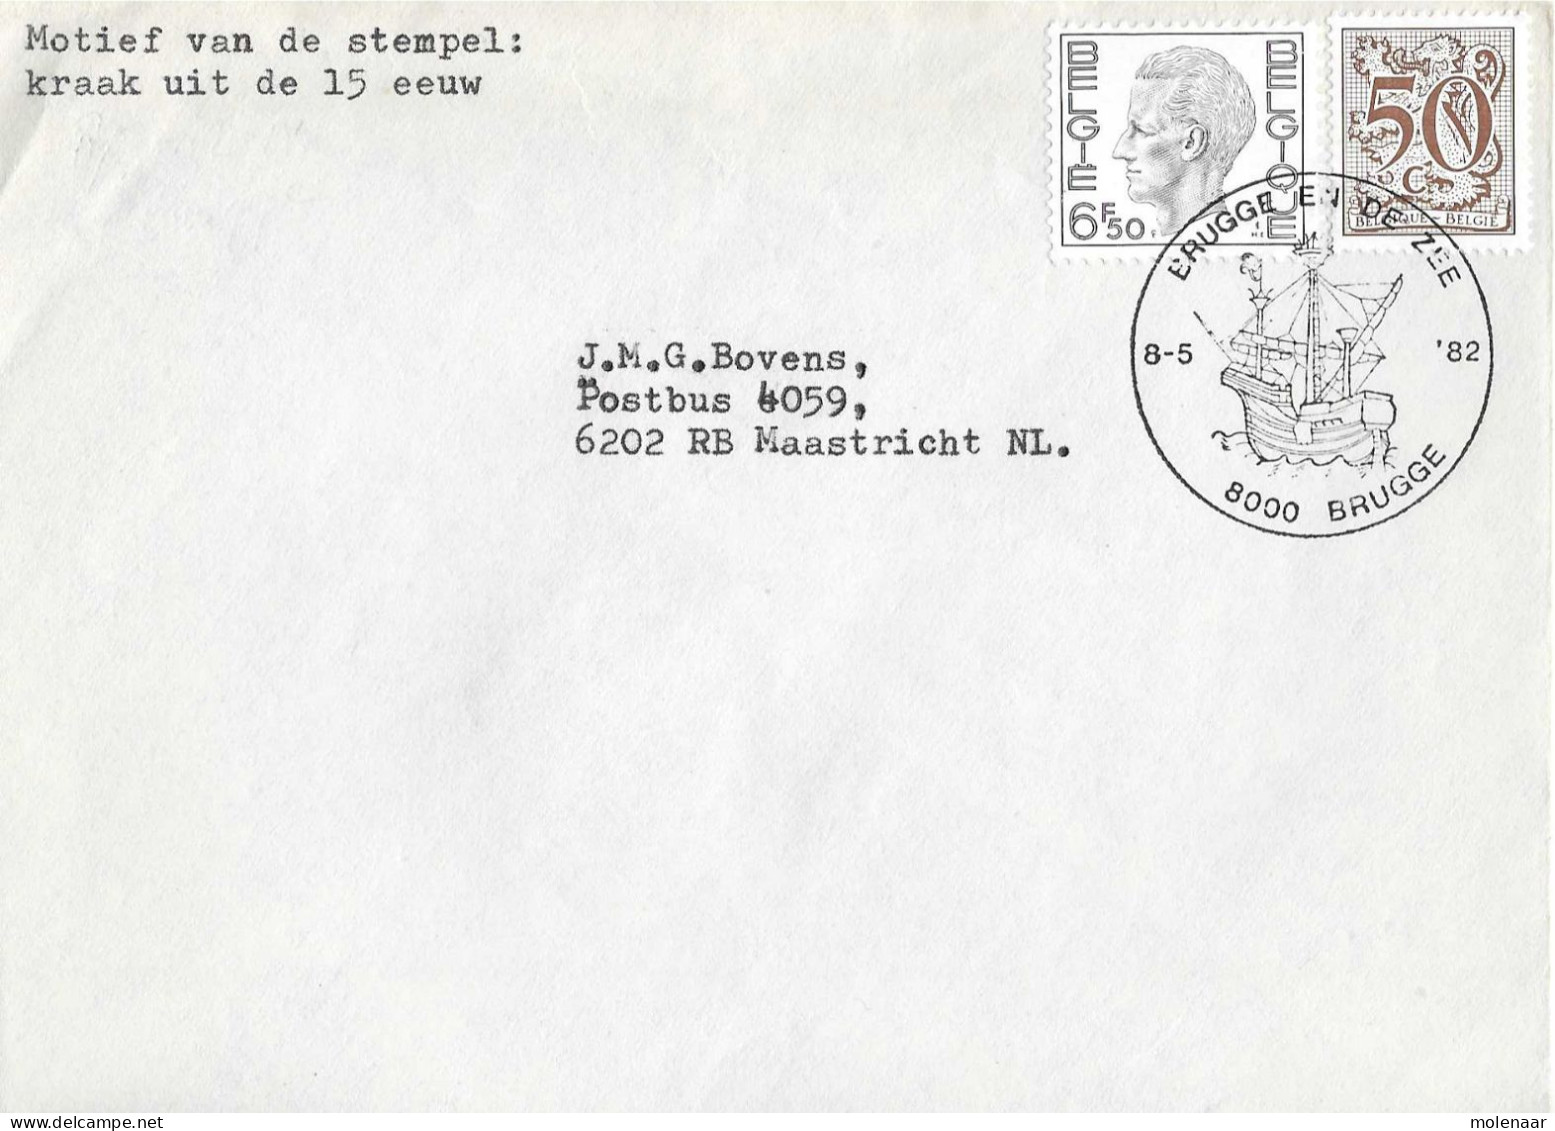 Postzegels > Europa > België > 1951-... > 1981-1990 > Brief Uit 1982 Met 2 Zegels (17041) - Brieven En Documenten